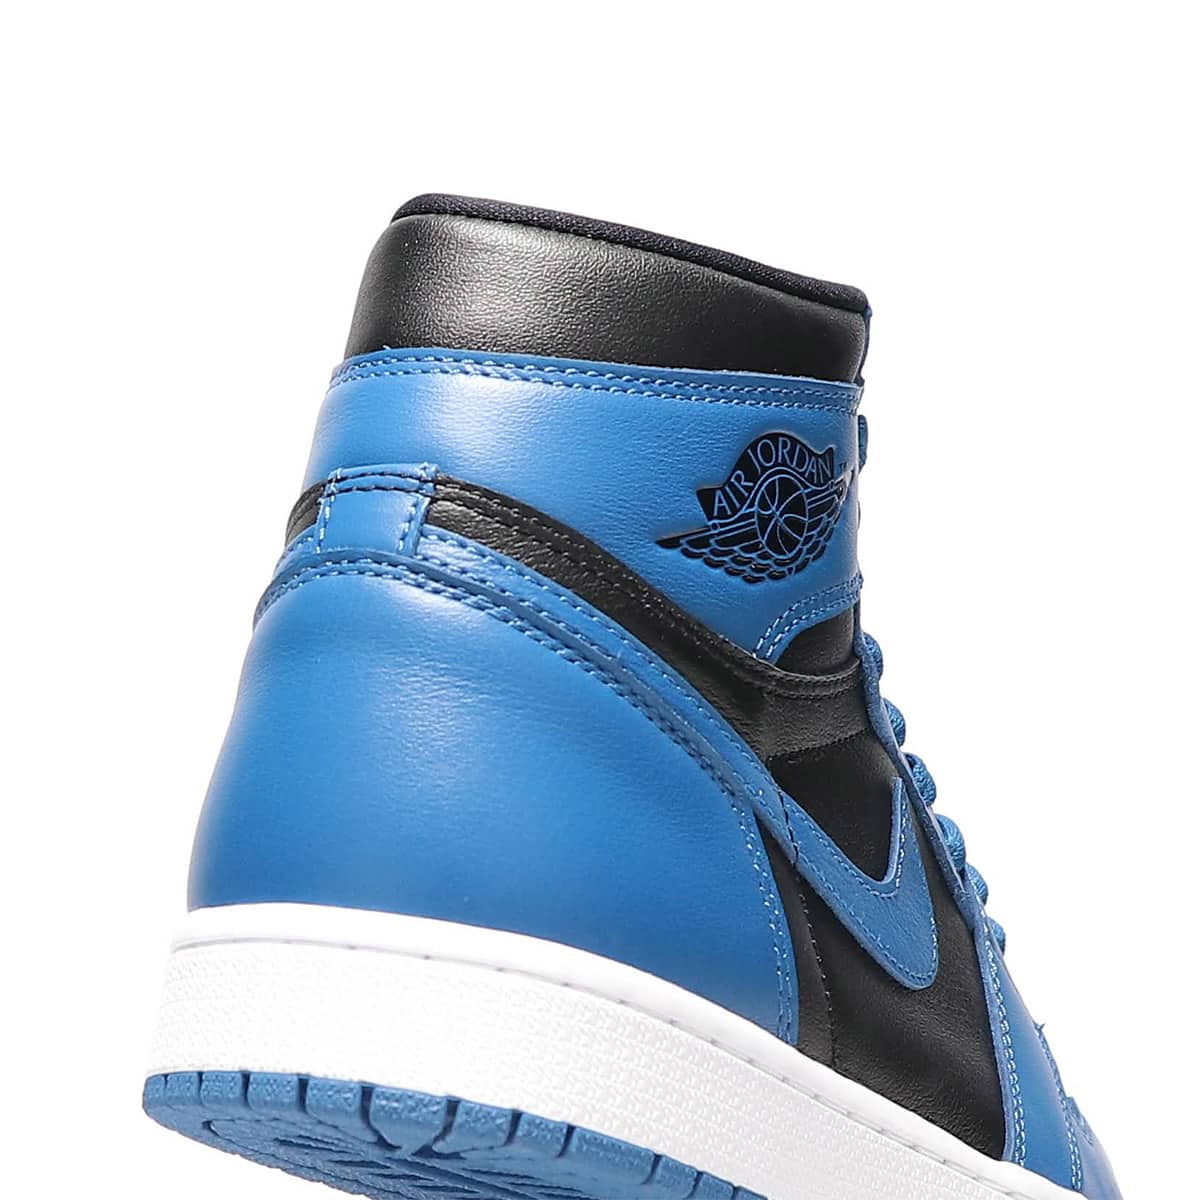 Nike AJ1 High OG "Dark Marina Blue"